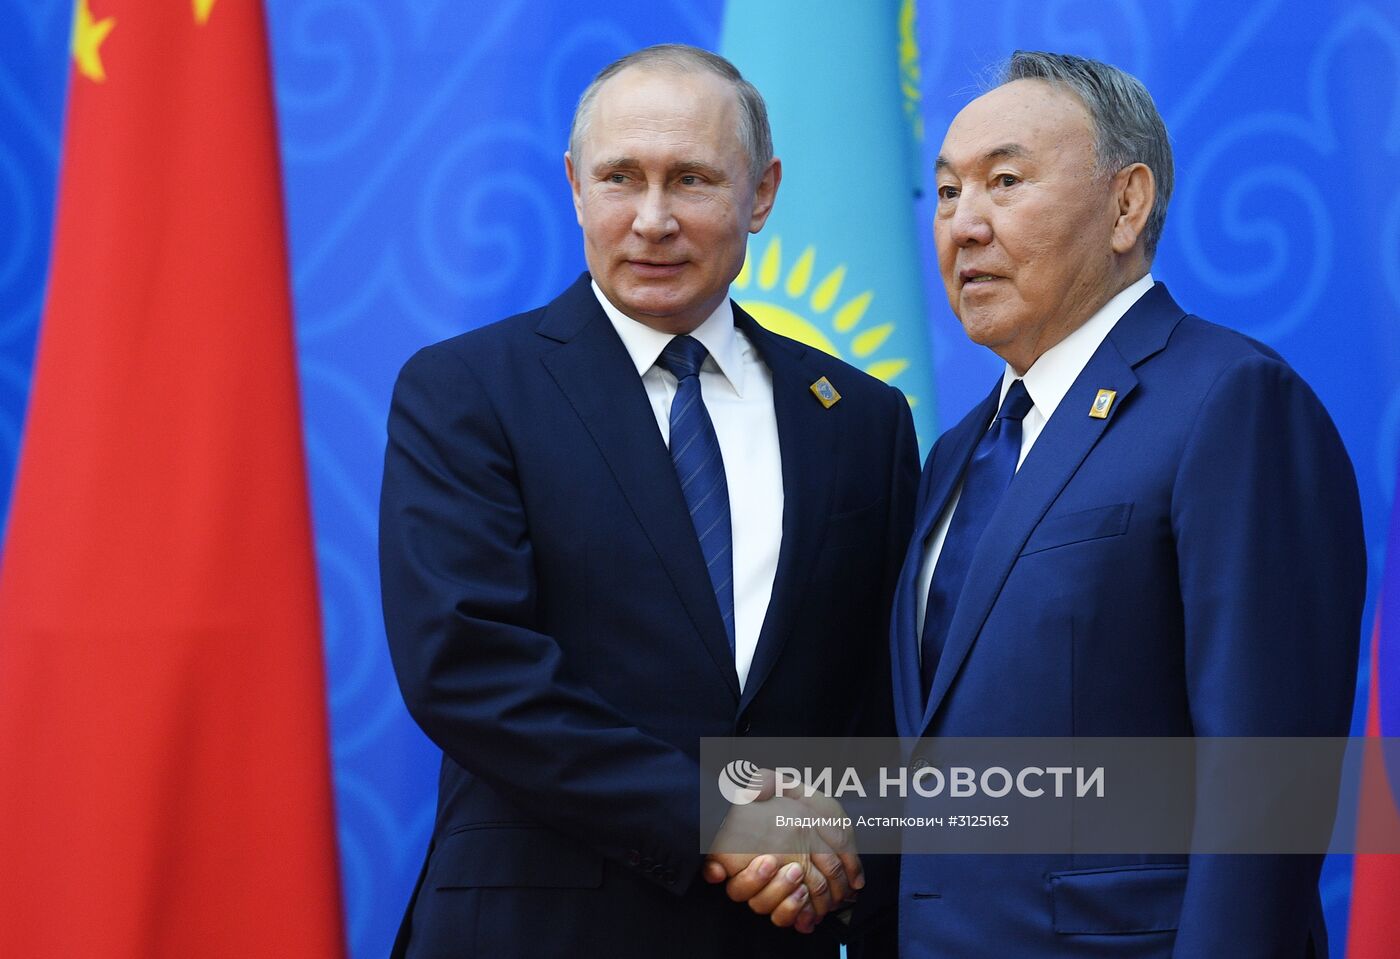 Рабочий визит президента РФ В. Путина в Казахстан. День второй